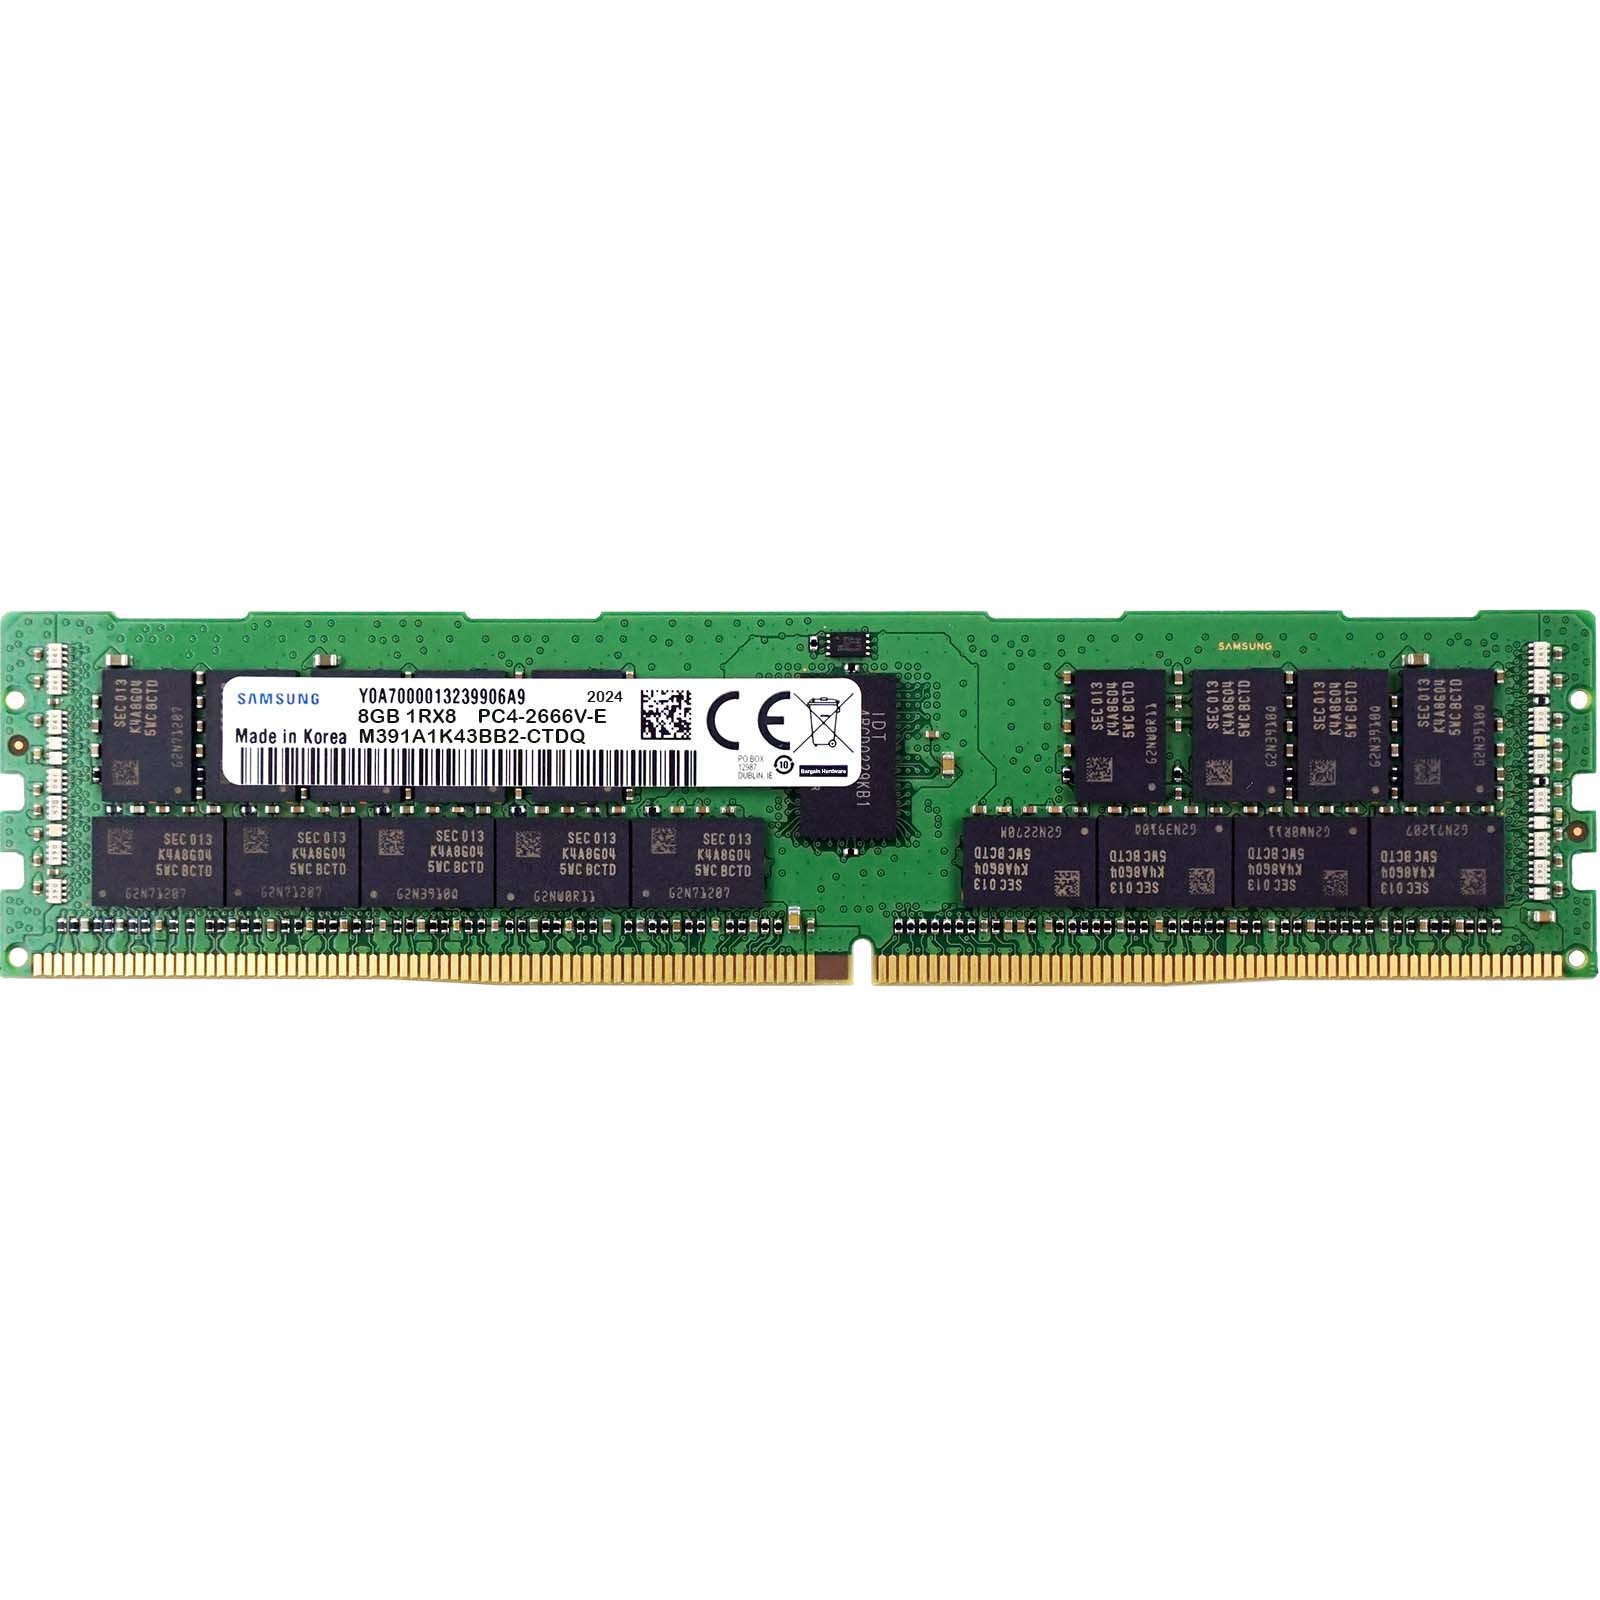 Samsung (M391A1K43BB2-CTDQ) - 8GB PC4-21300V-E (1RX8, DDR4-2666MHz) RAM